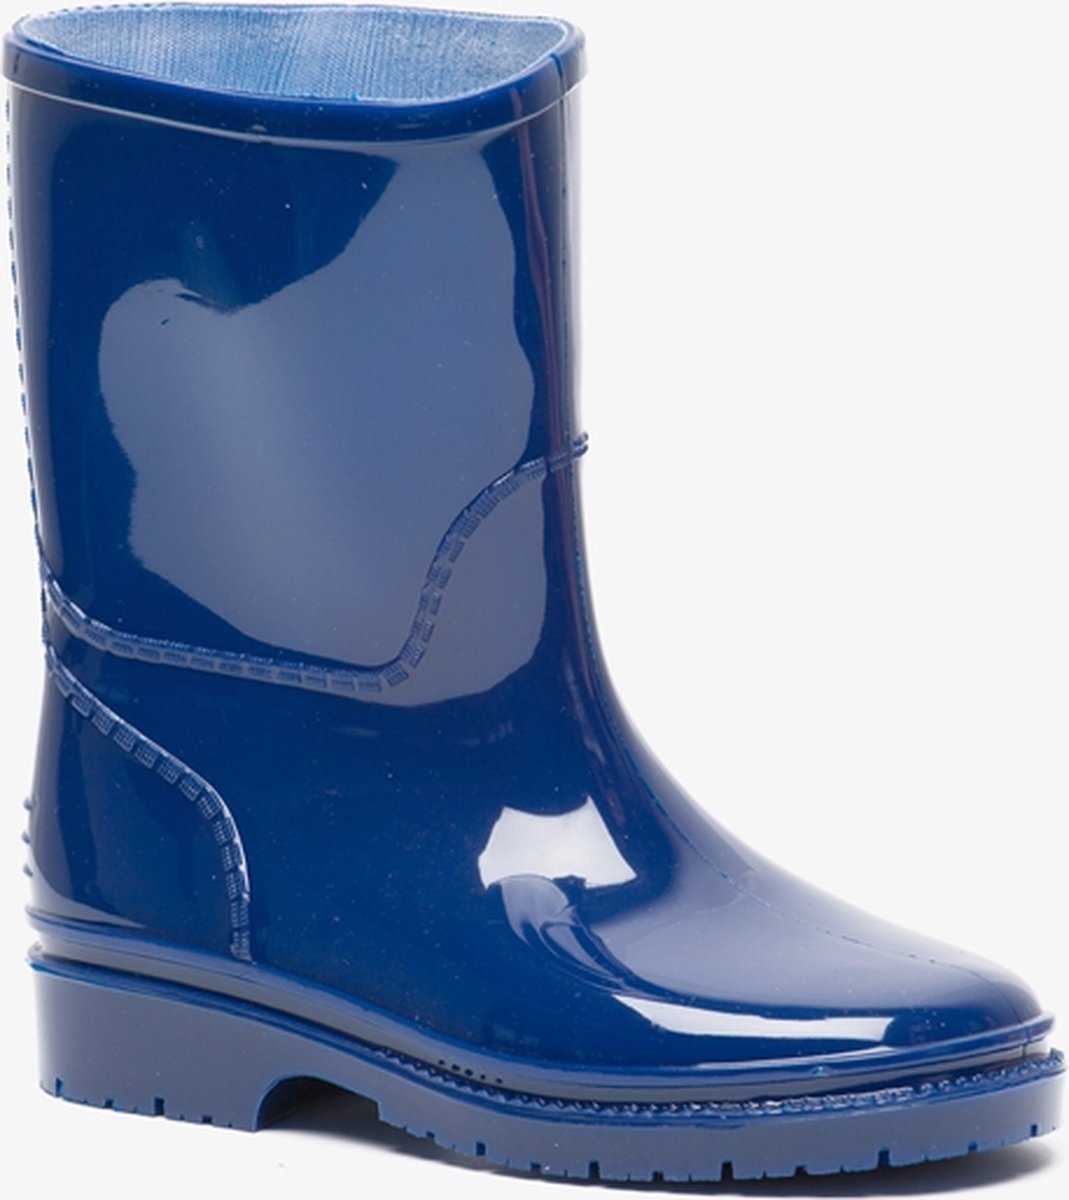 Kinder regenlaarzen - Blauw - Maat 21 - Scapino